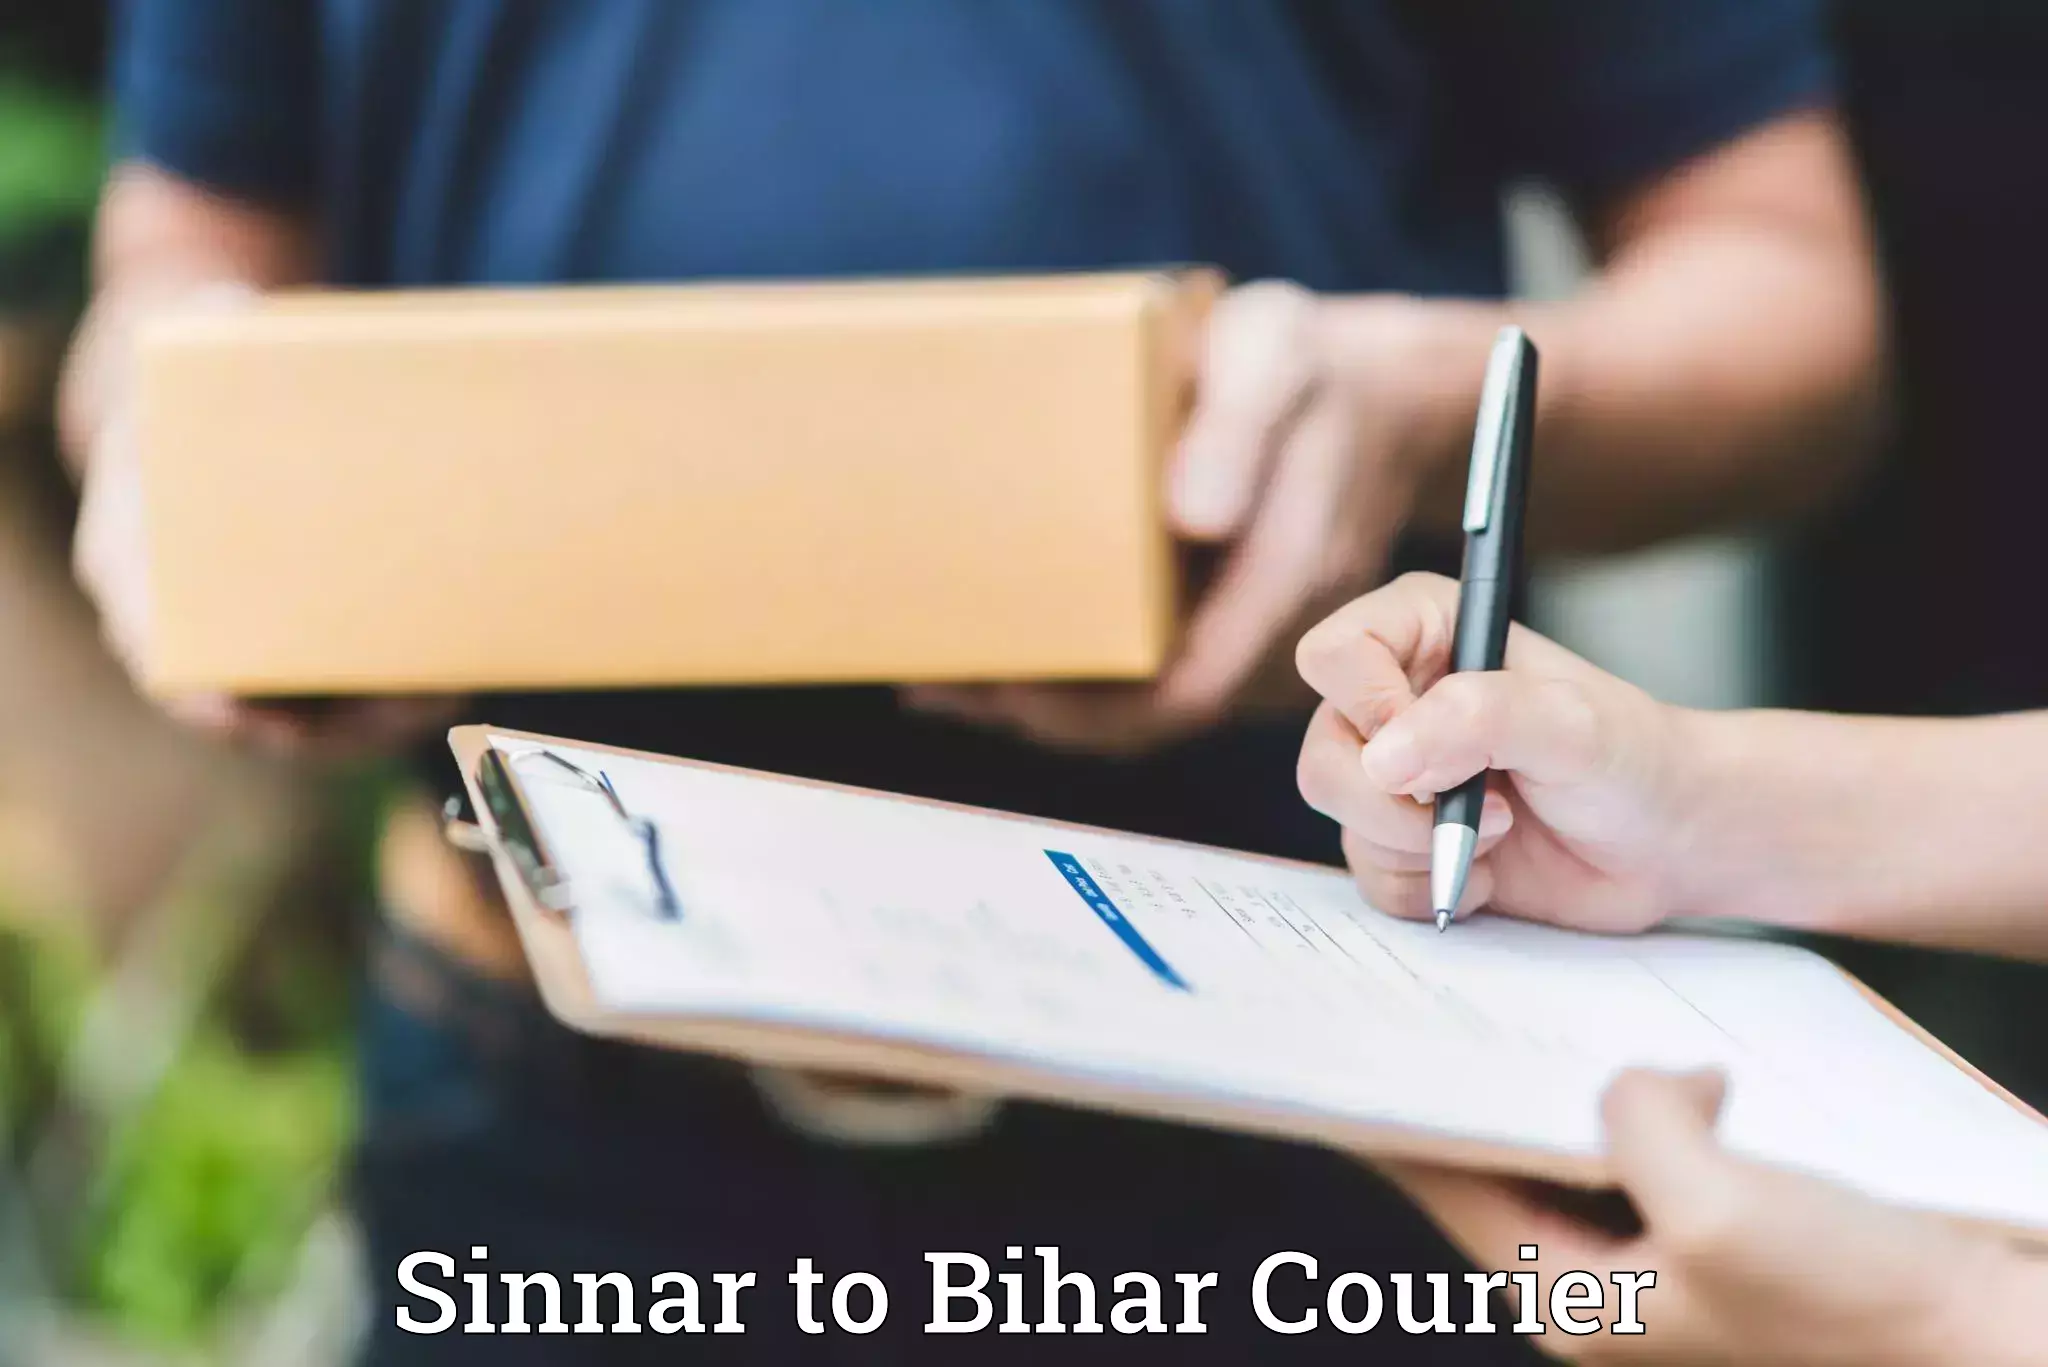 Door-to-door baggage service Sinnar to Bihar